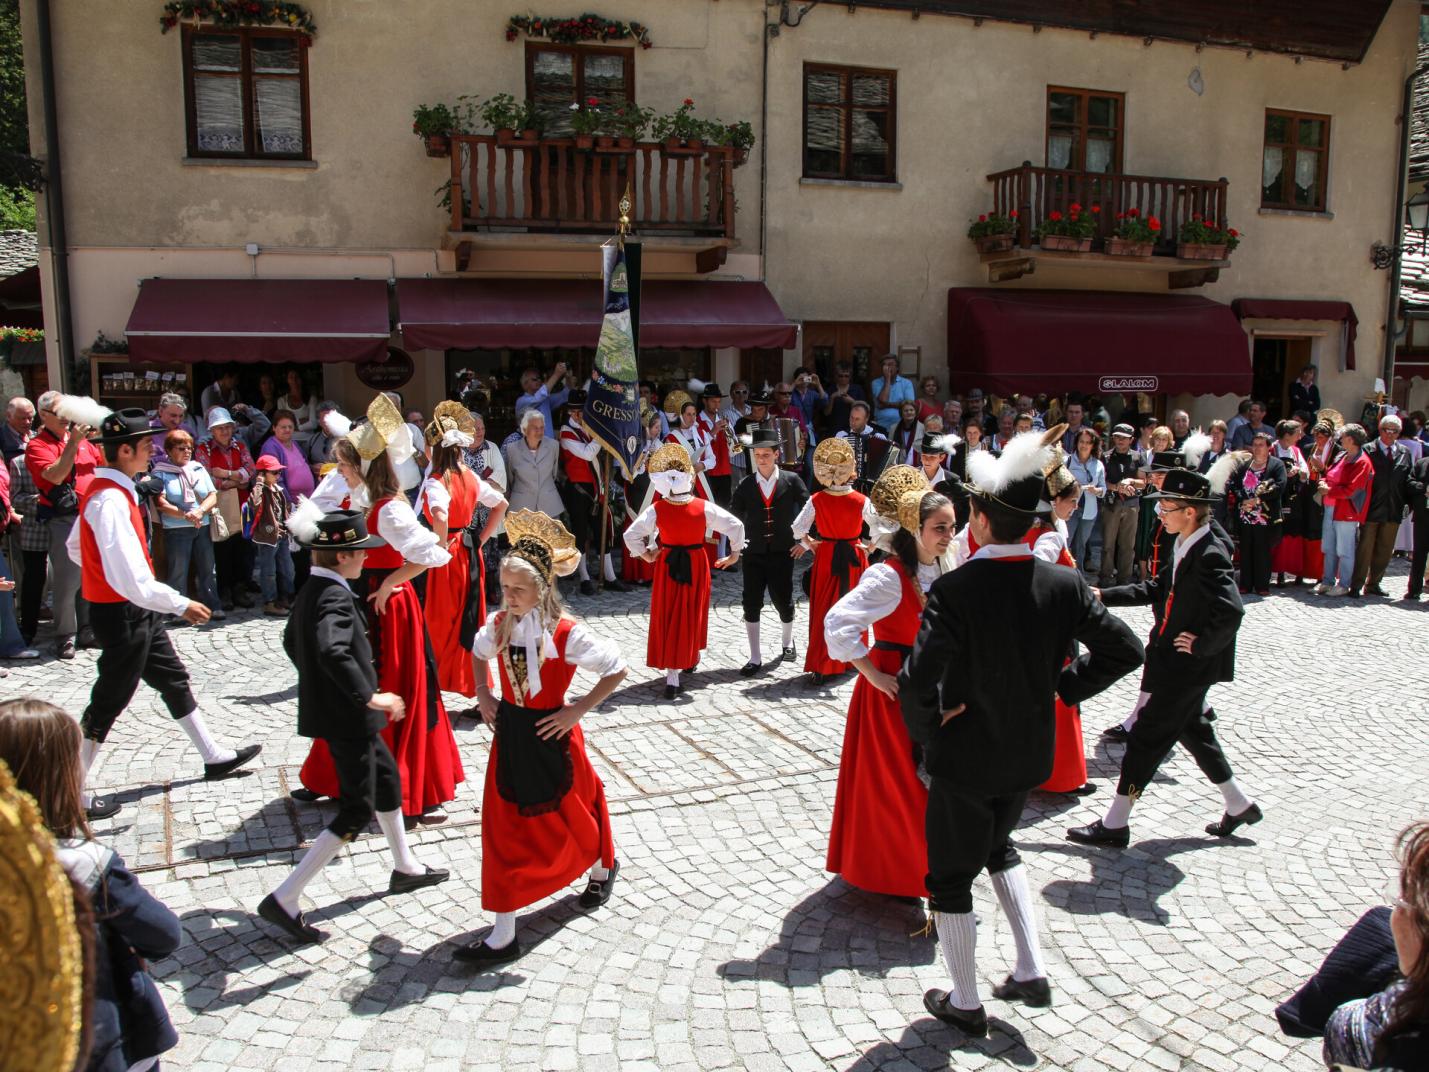 Performance of the folk group "Greschòneyer Trachtengruppe"